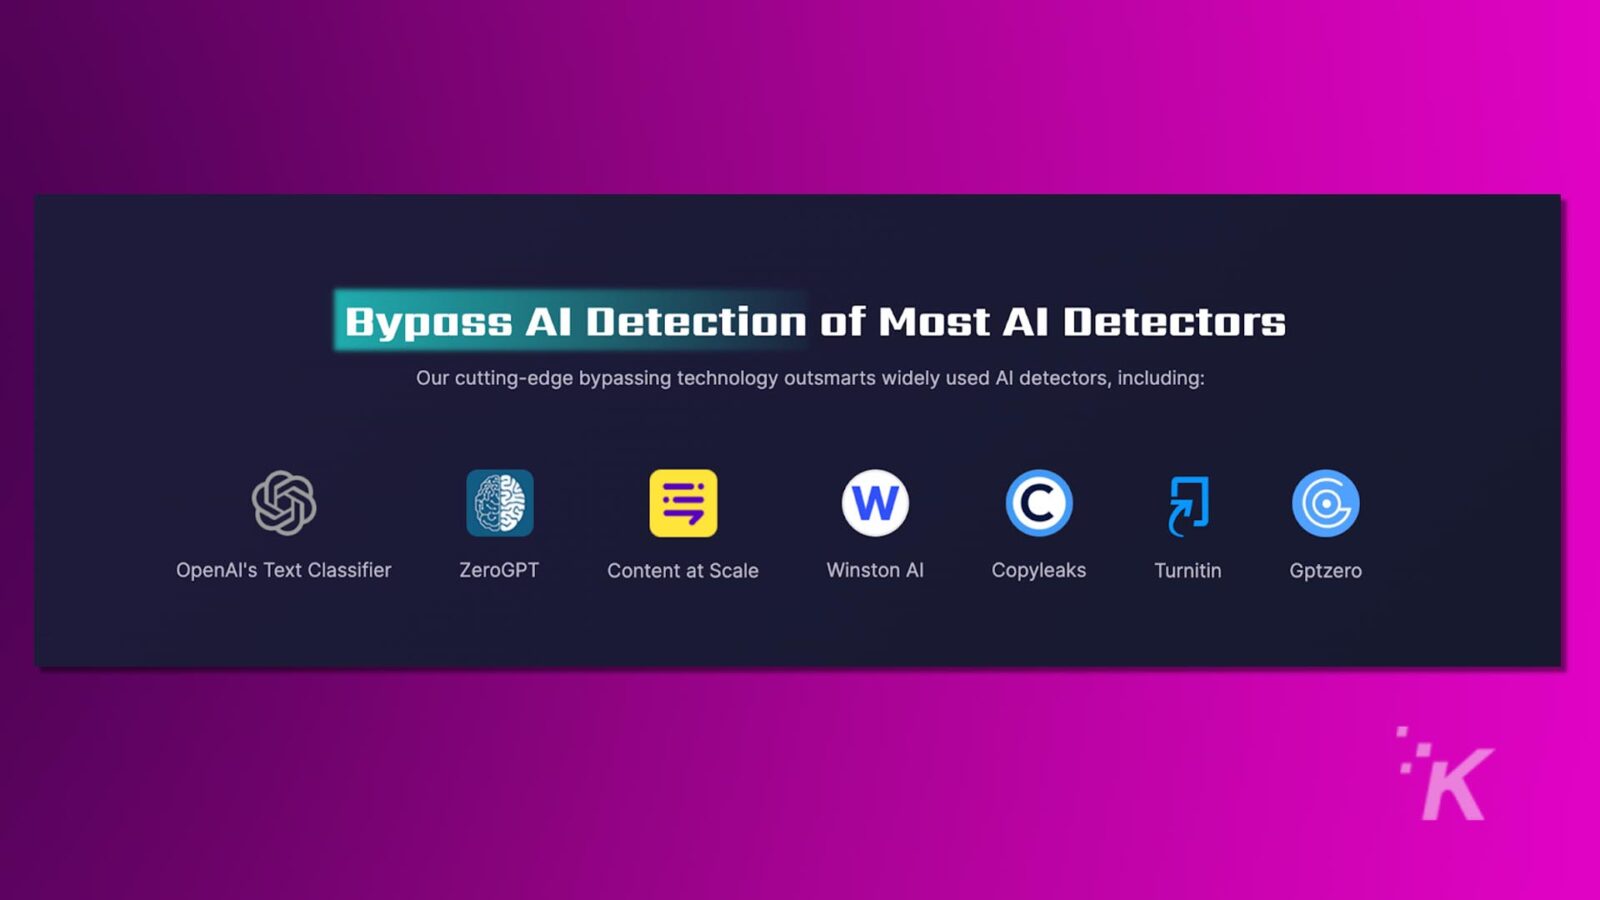 A imagem mostra um anúncio que afirma ignorar a detecção de IA com logotipos de diversas tecnologias de IA, como o classificador de texto da openai e o turnitin.